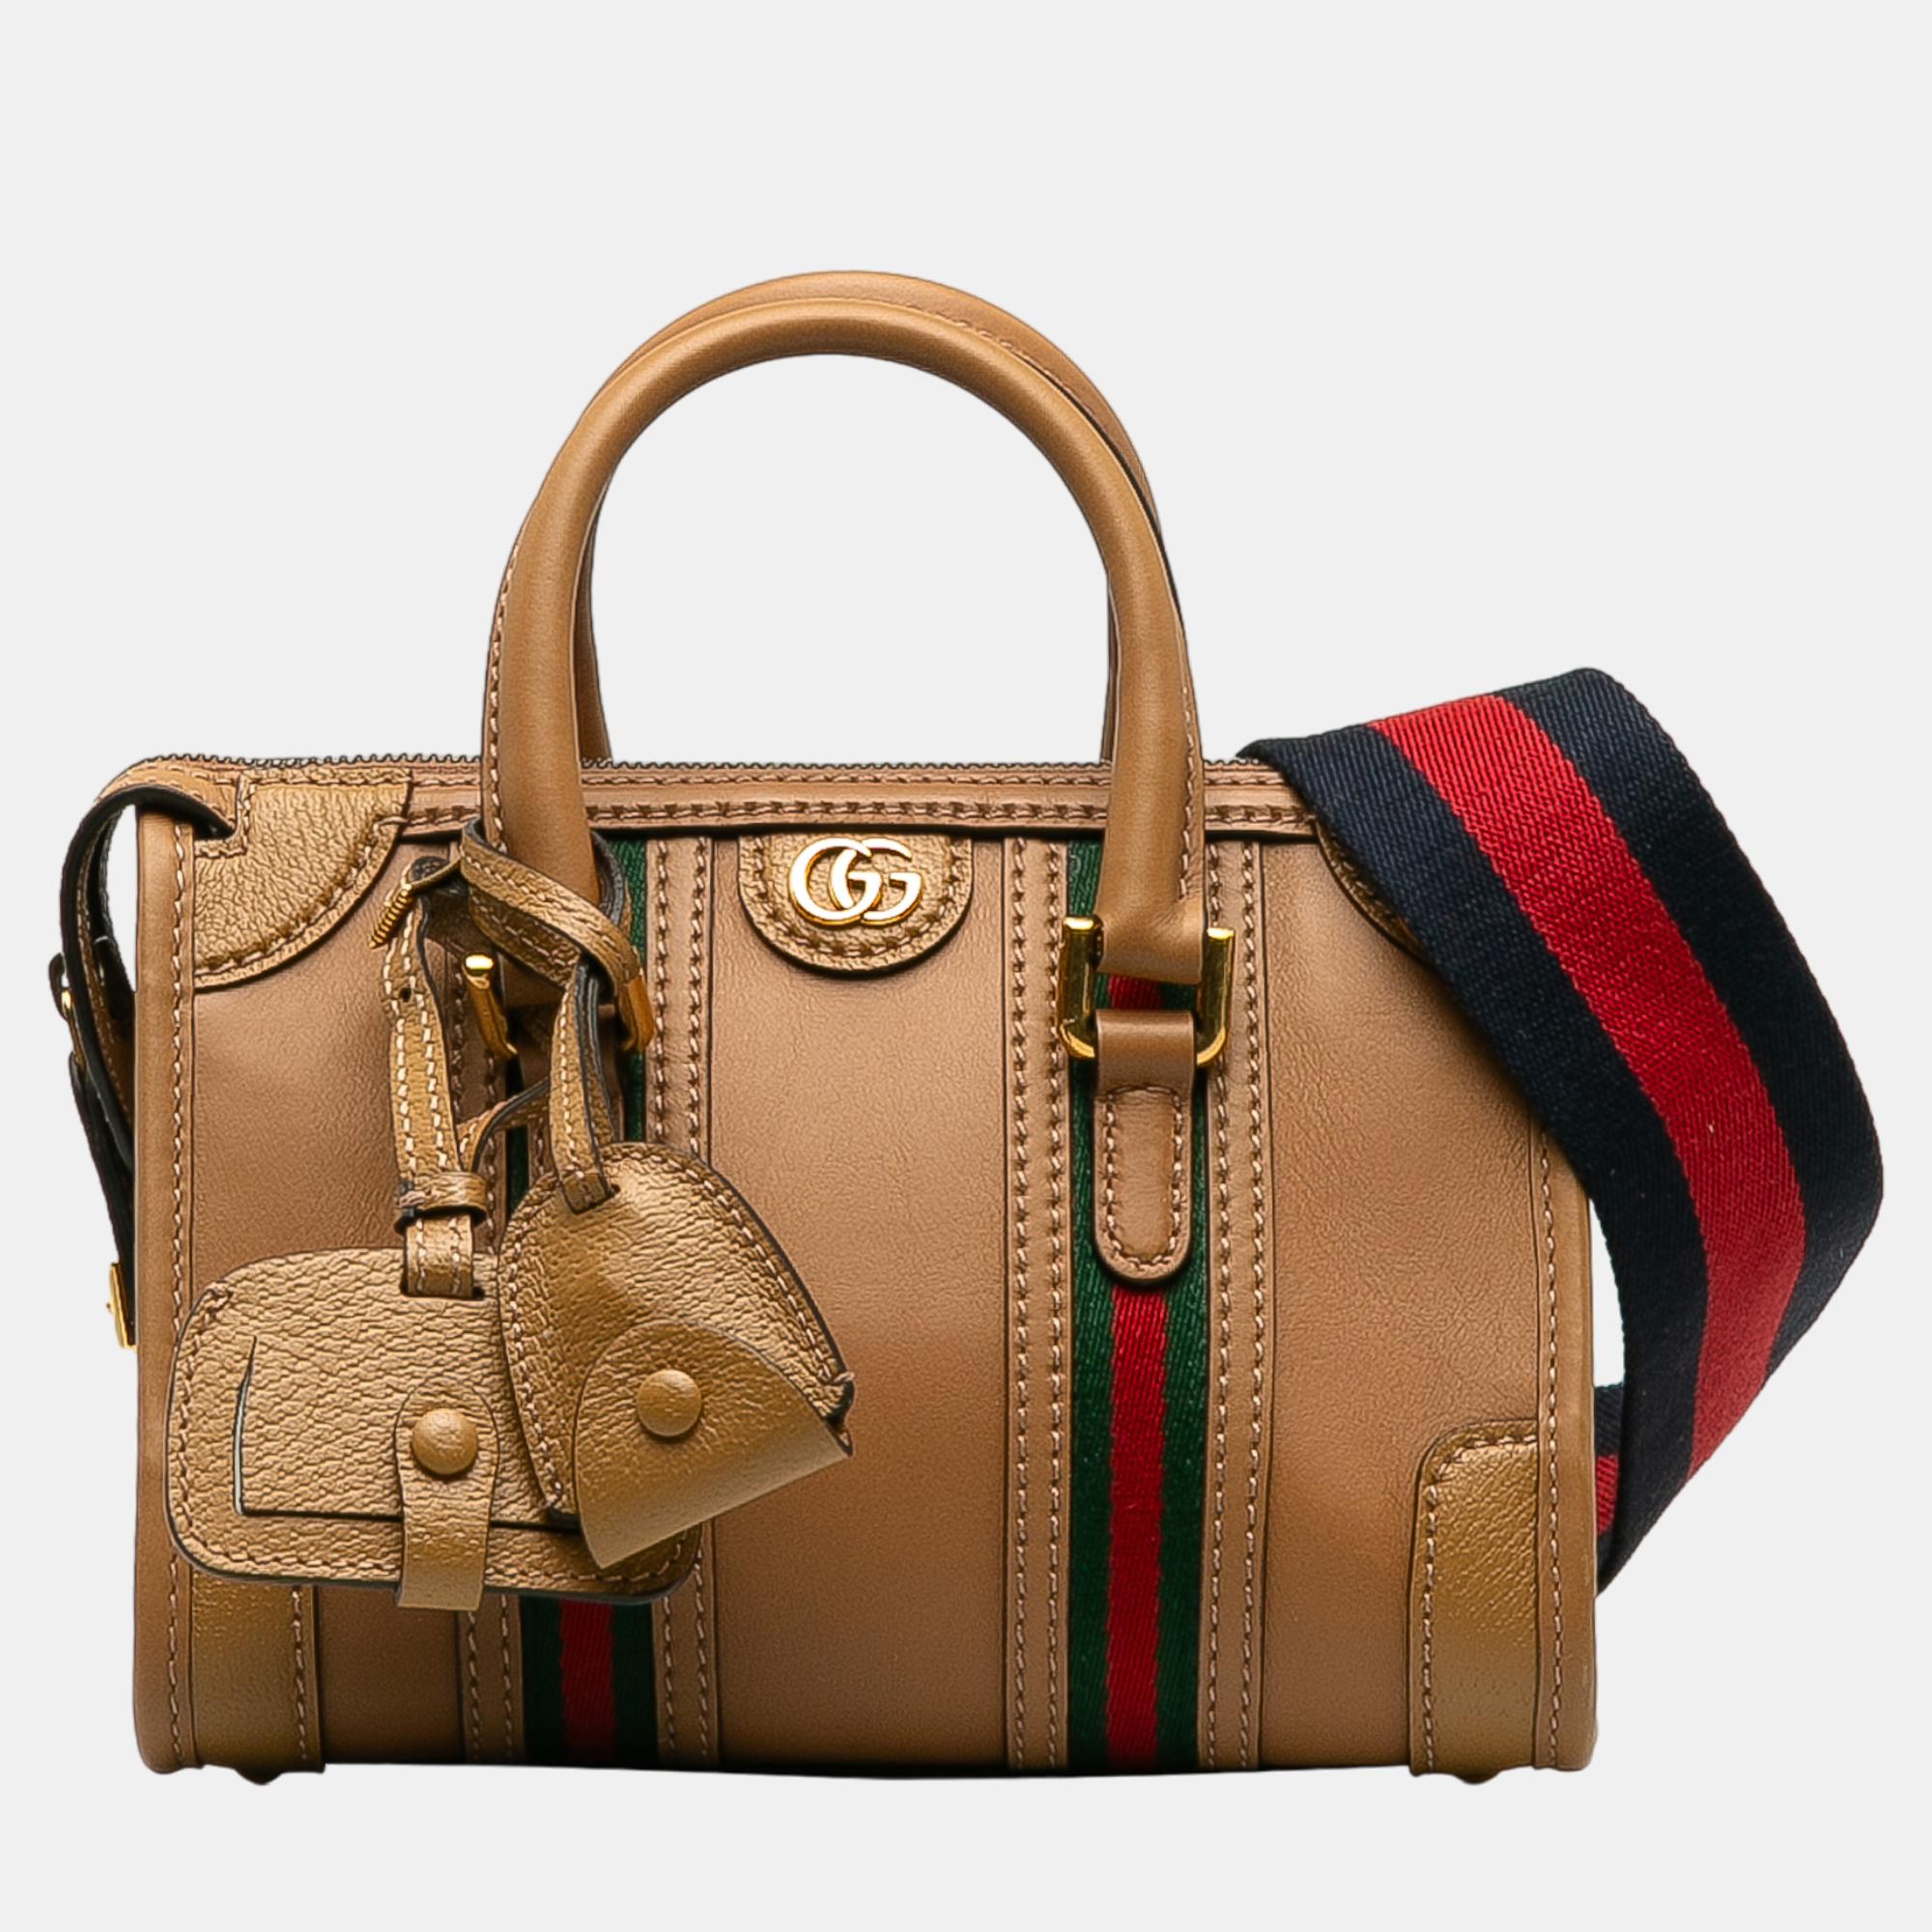 Gucci brown mini leather bauletto bag